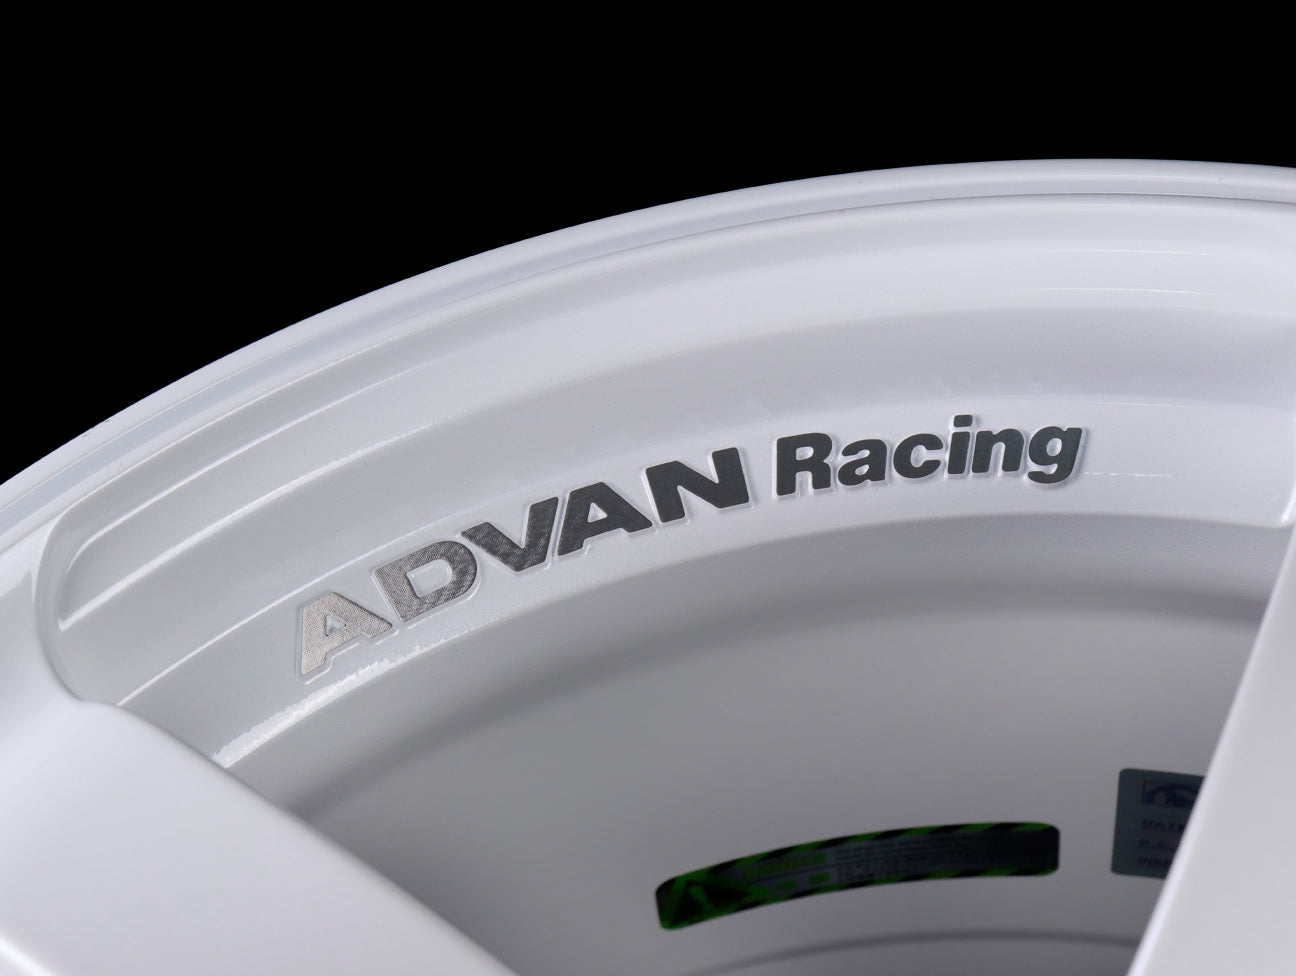 Advan Racing TC4 Wheels - White / 18x9.5 / 5x120 / +38